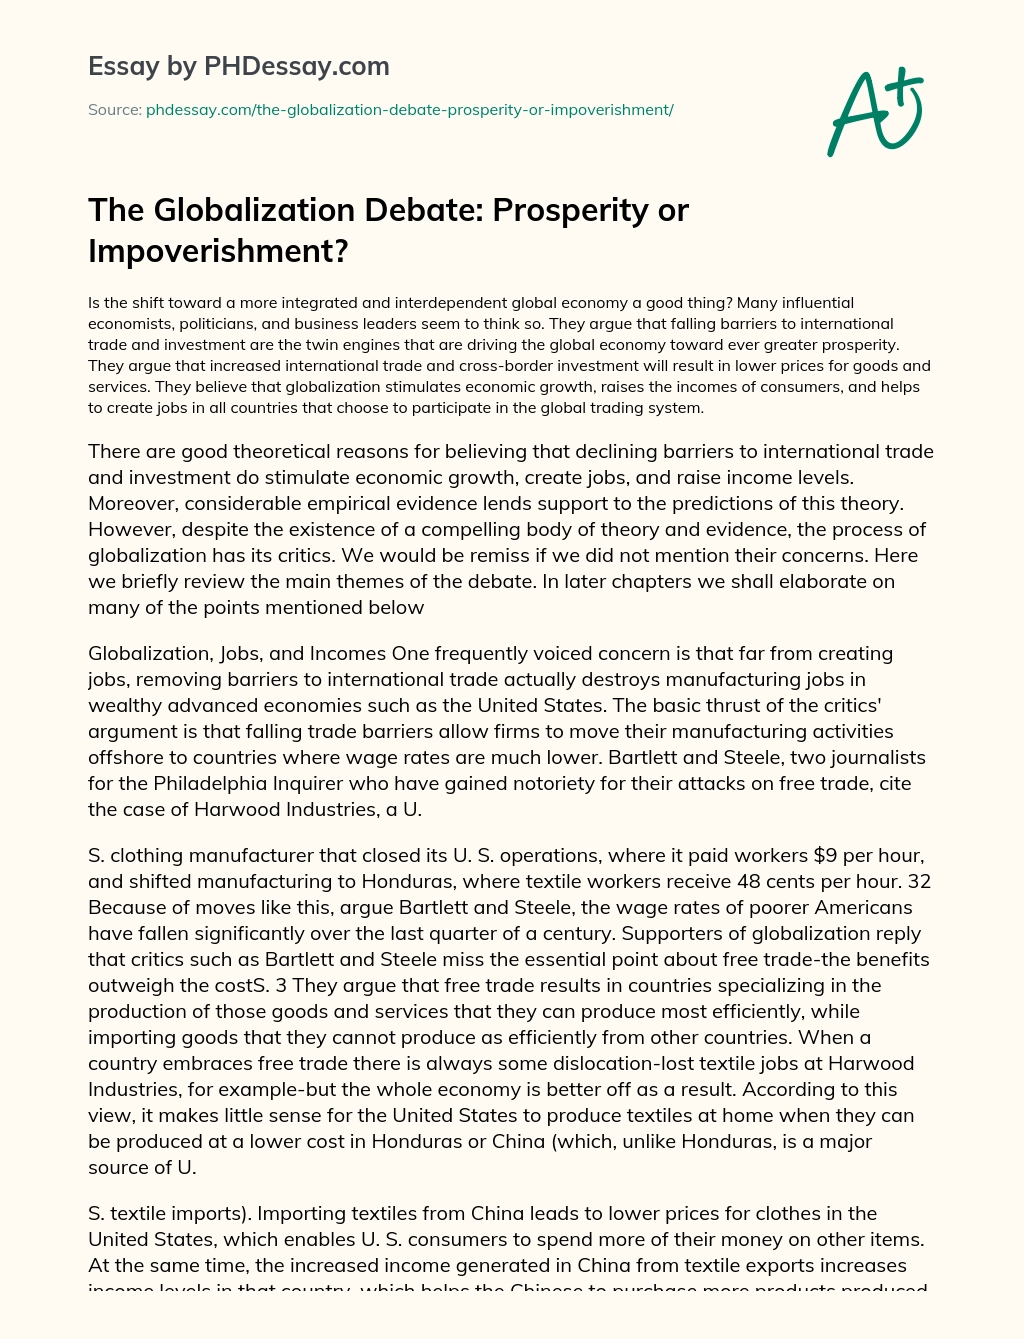 The Globalization Debate: Prosperity or Impoverishment? essay